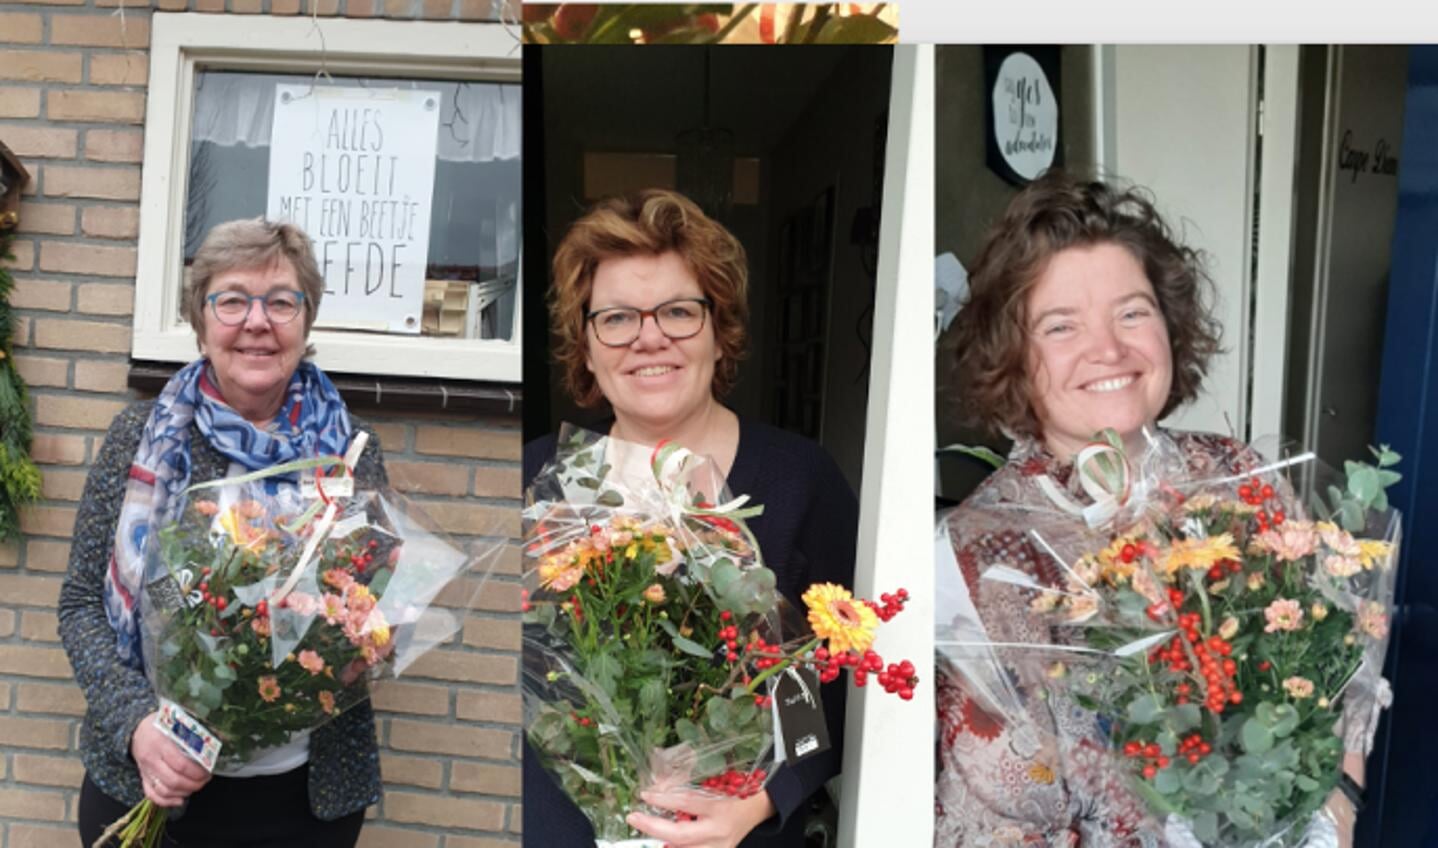 De drie genomineerden werden eerder verrast met bloemen: Fenneke van der Vegte, Janske Bakker, Froukje Heidt-Bijkerk en Mariska Stehouwer.